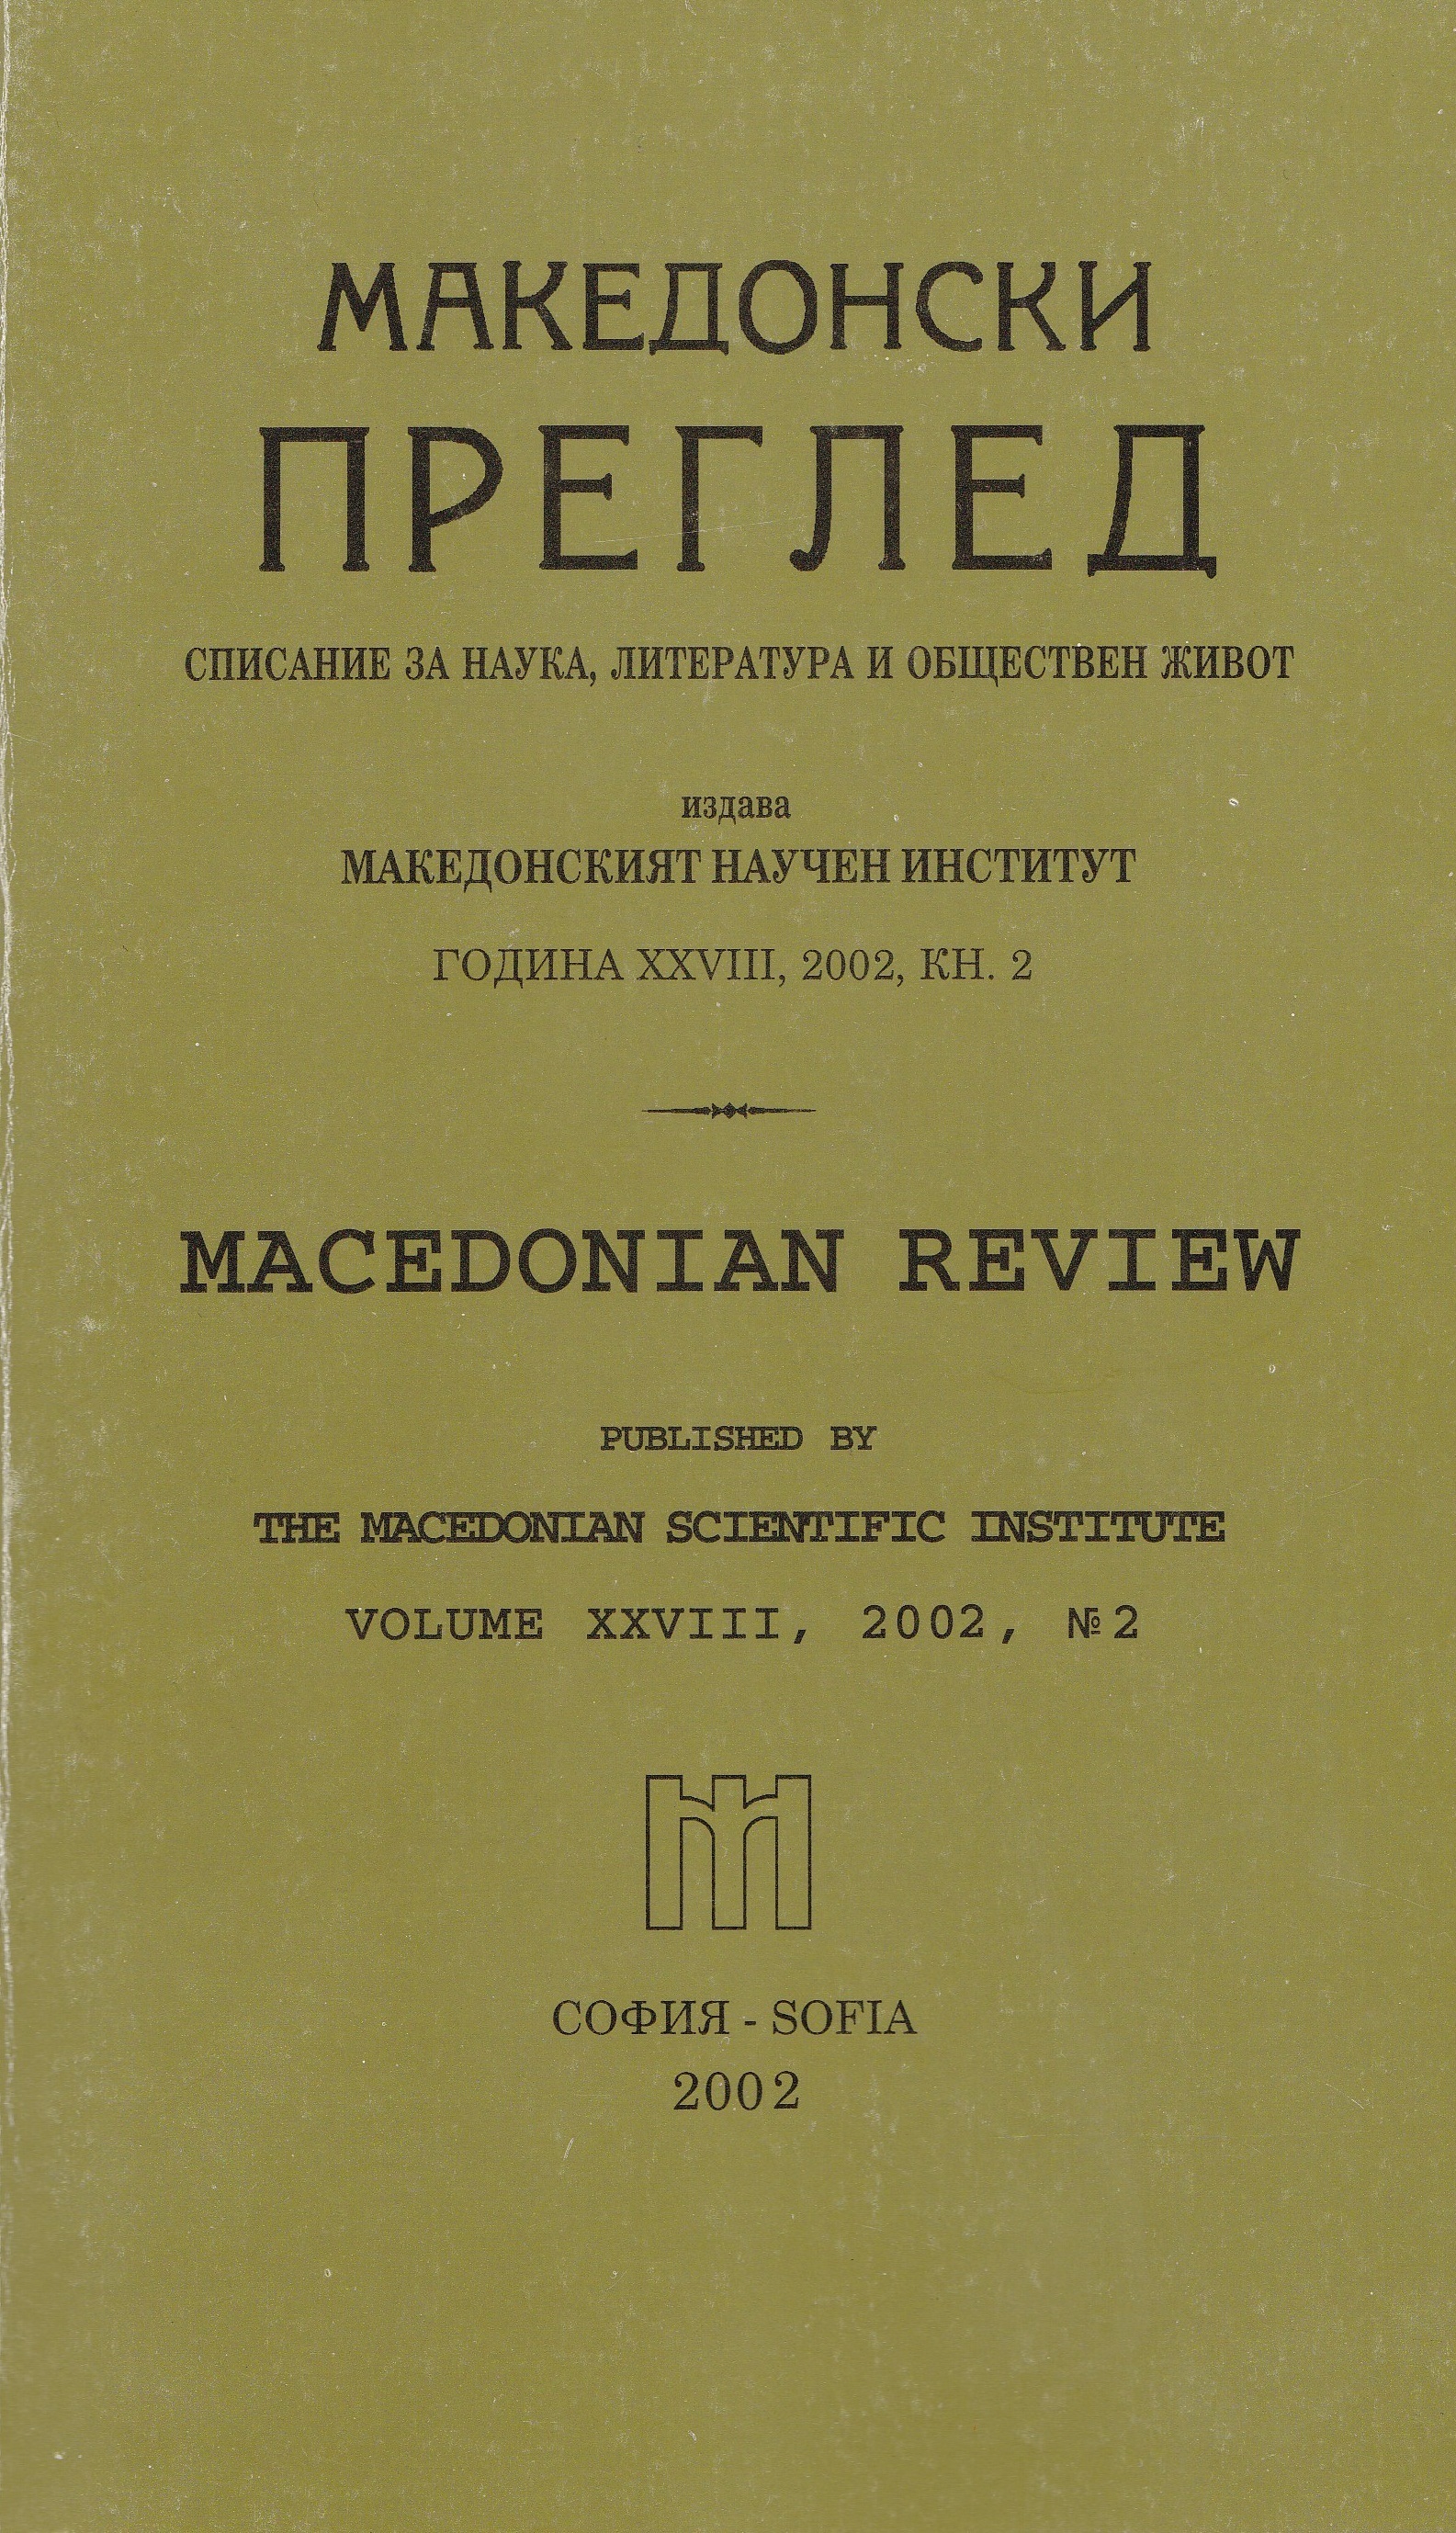 Македонски литературен кръжок (1938-1941 г.) Възвръщане към българските корени (II част)